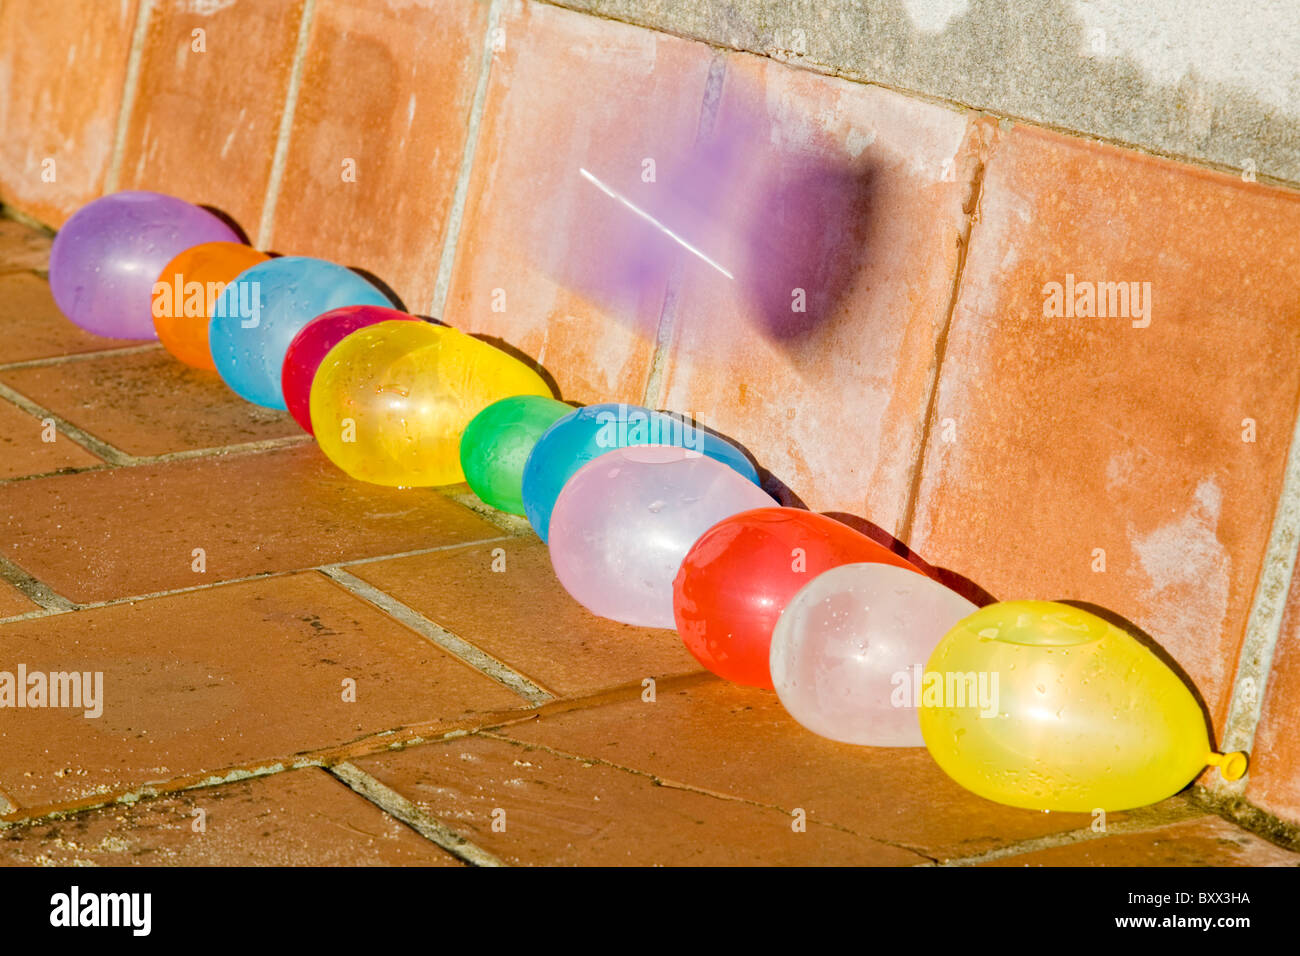 Rempli d'eau ballons multicolores dans une ligne, avec un ballon sur le point d'exploser Banque D'Images